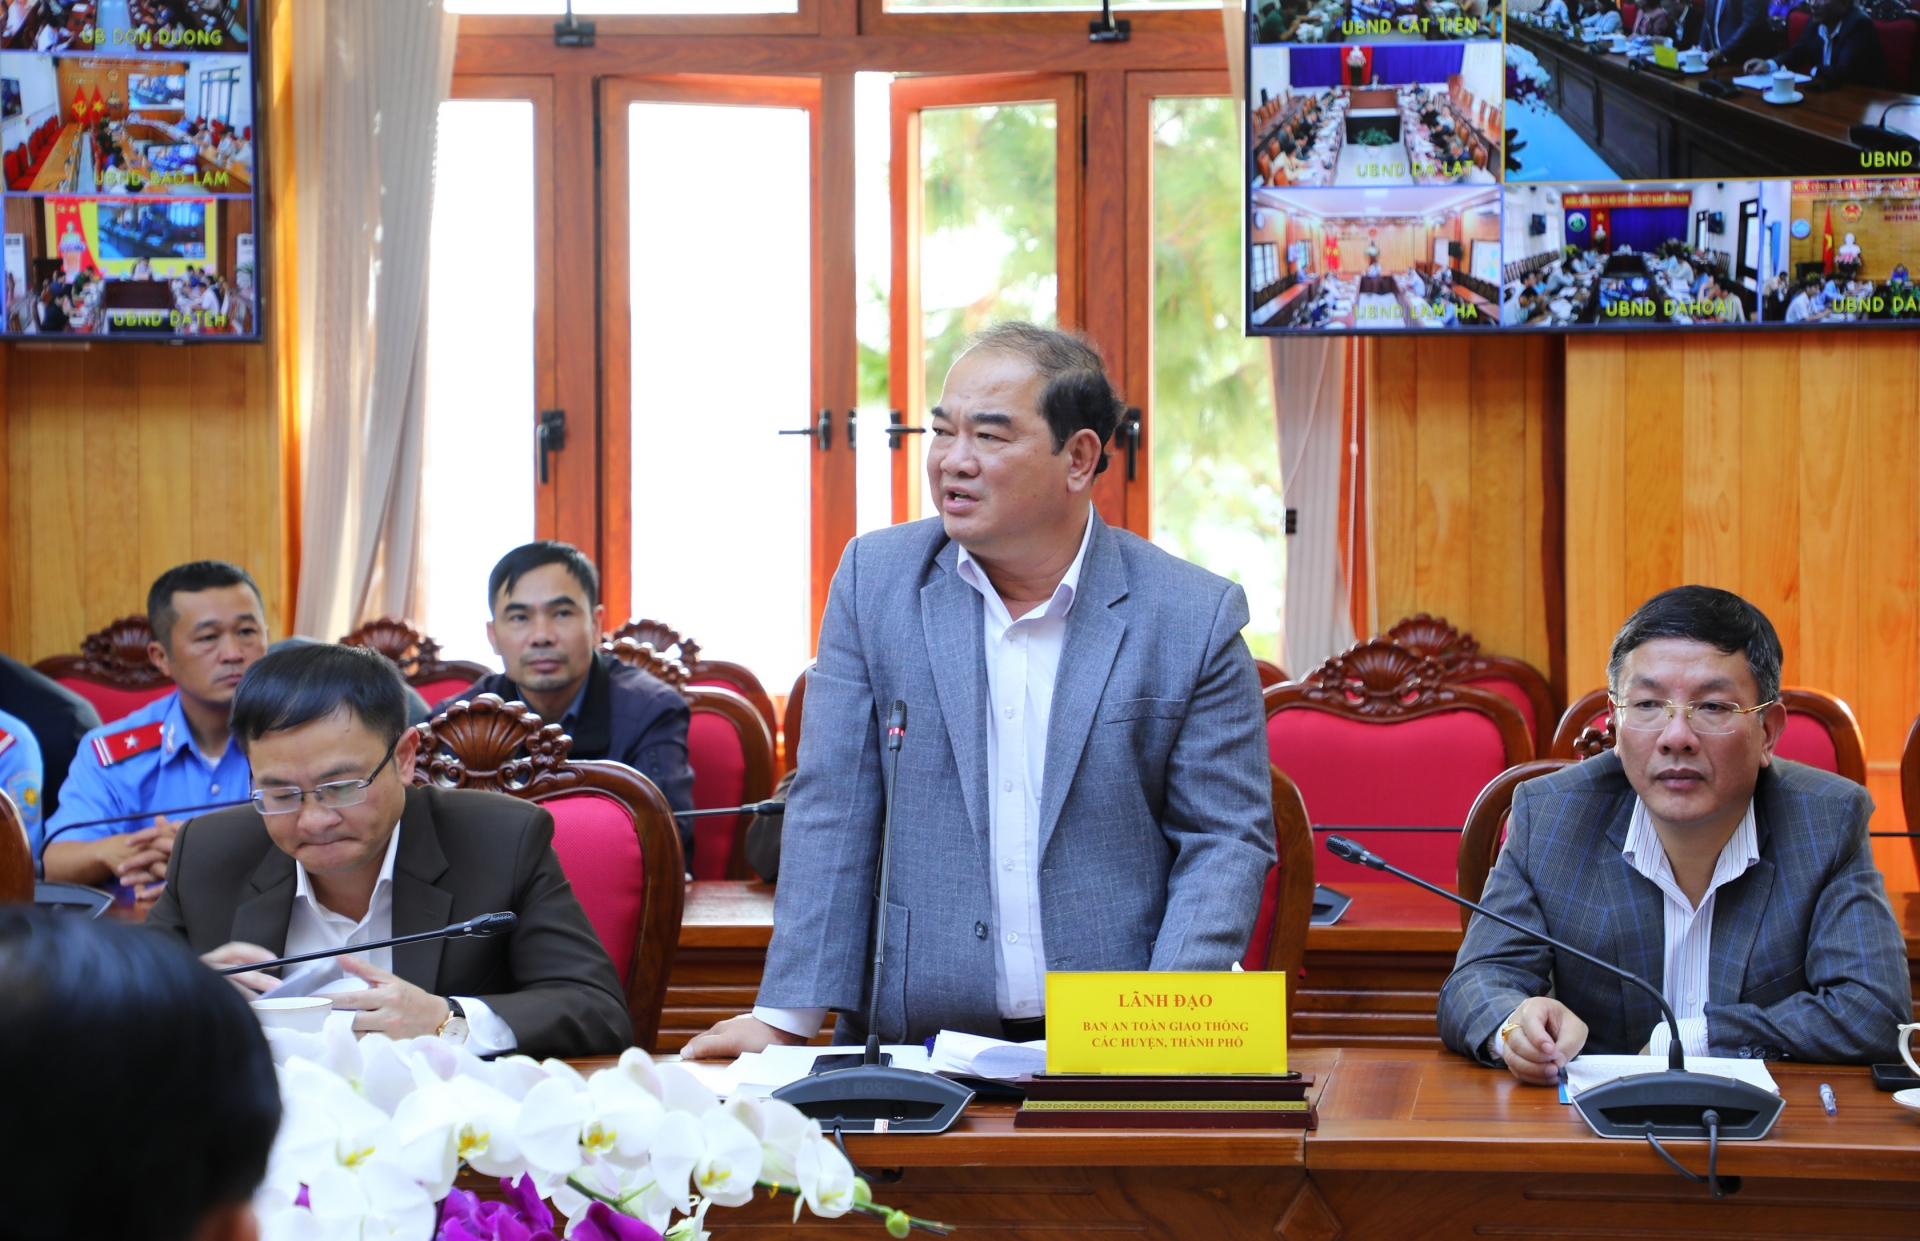 Chủ tịch UBNd huyện Đơn Dương